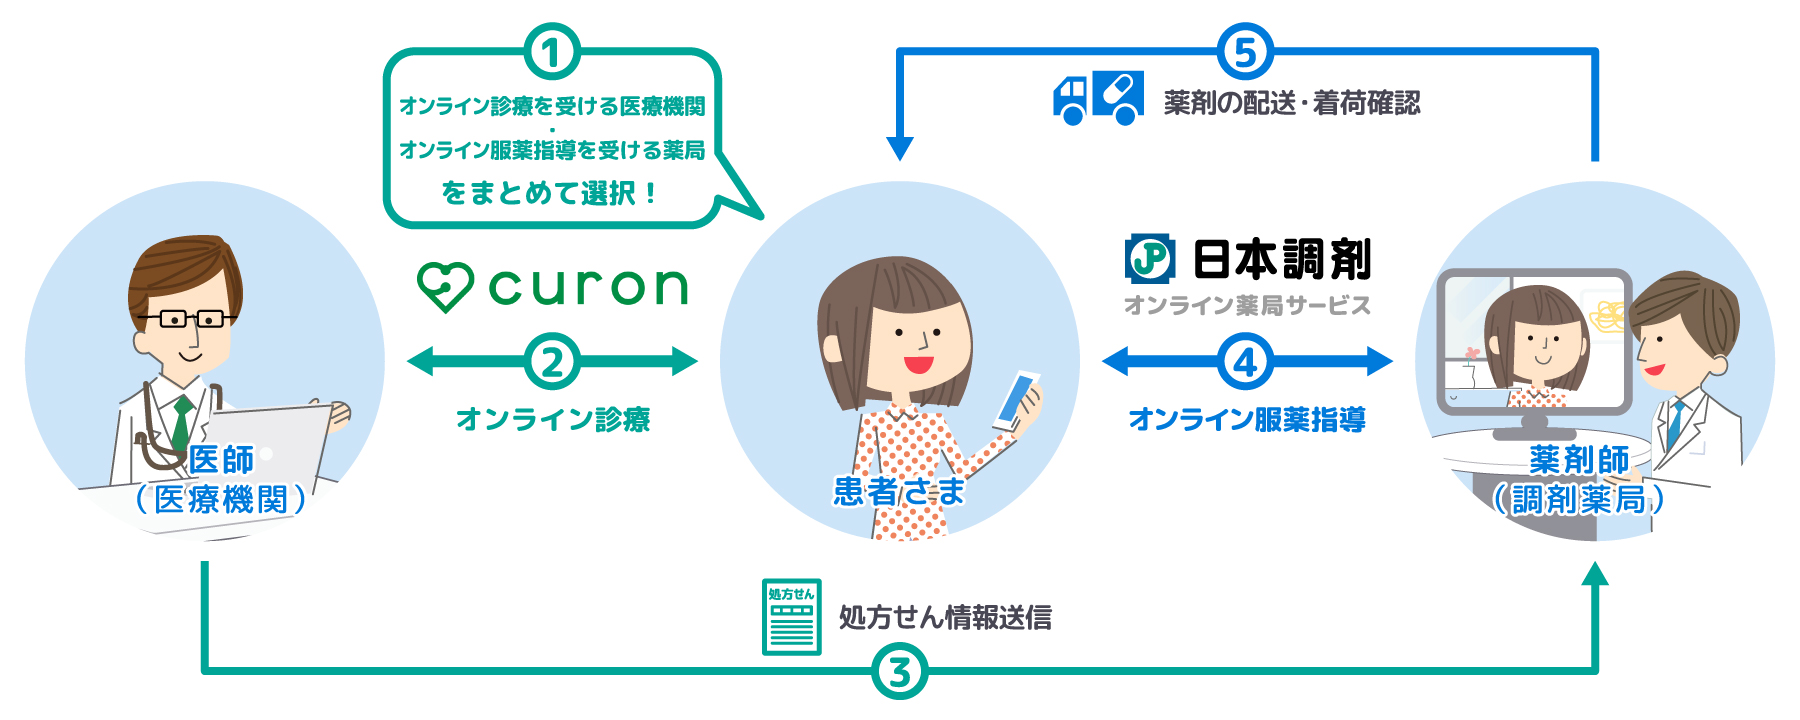 「日本調剤 オンライン薬局サービス」とオンライン診療サービス「curon」の連携概念図